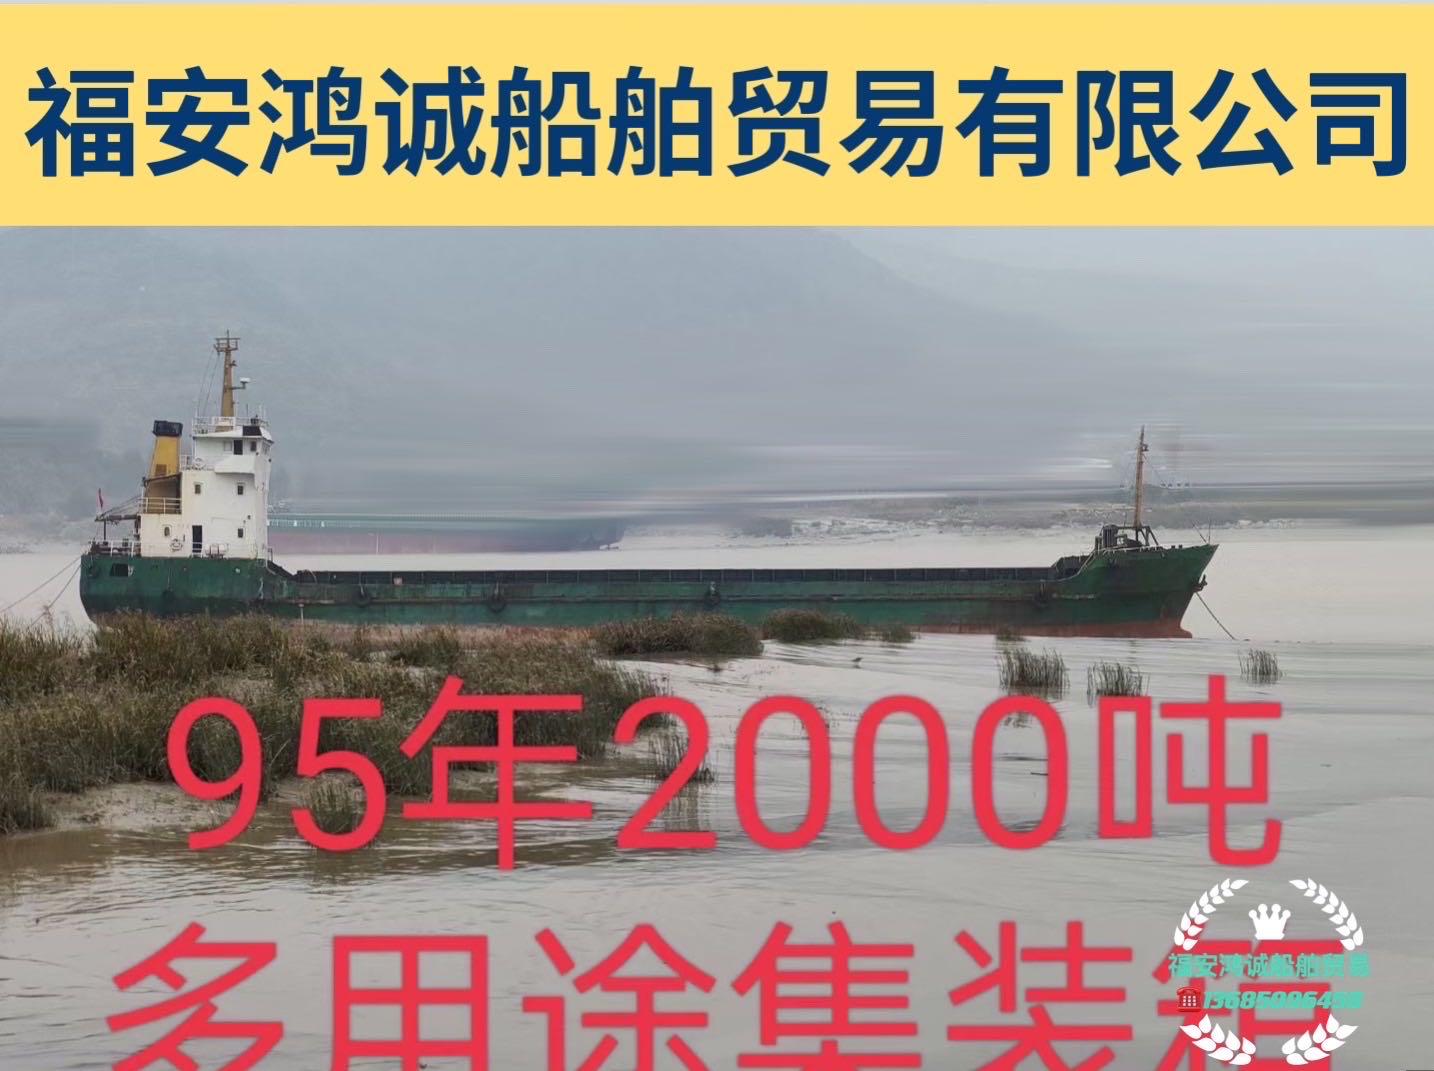 低价出售2000吨多用途集装箱船 福建 宁德市-2.jpg